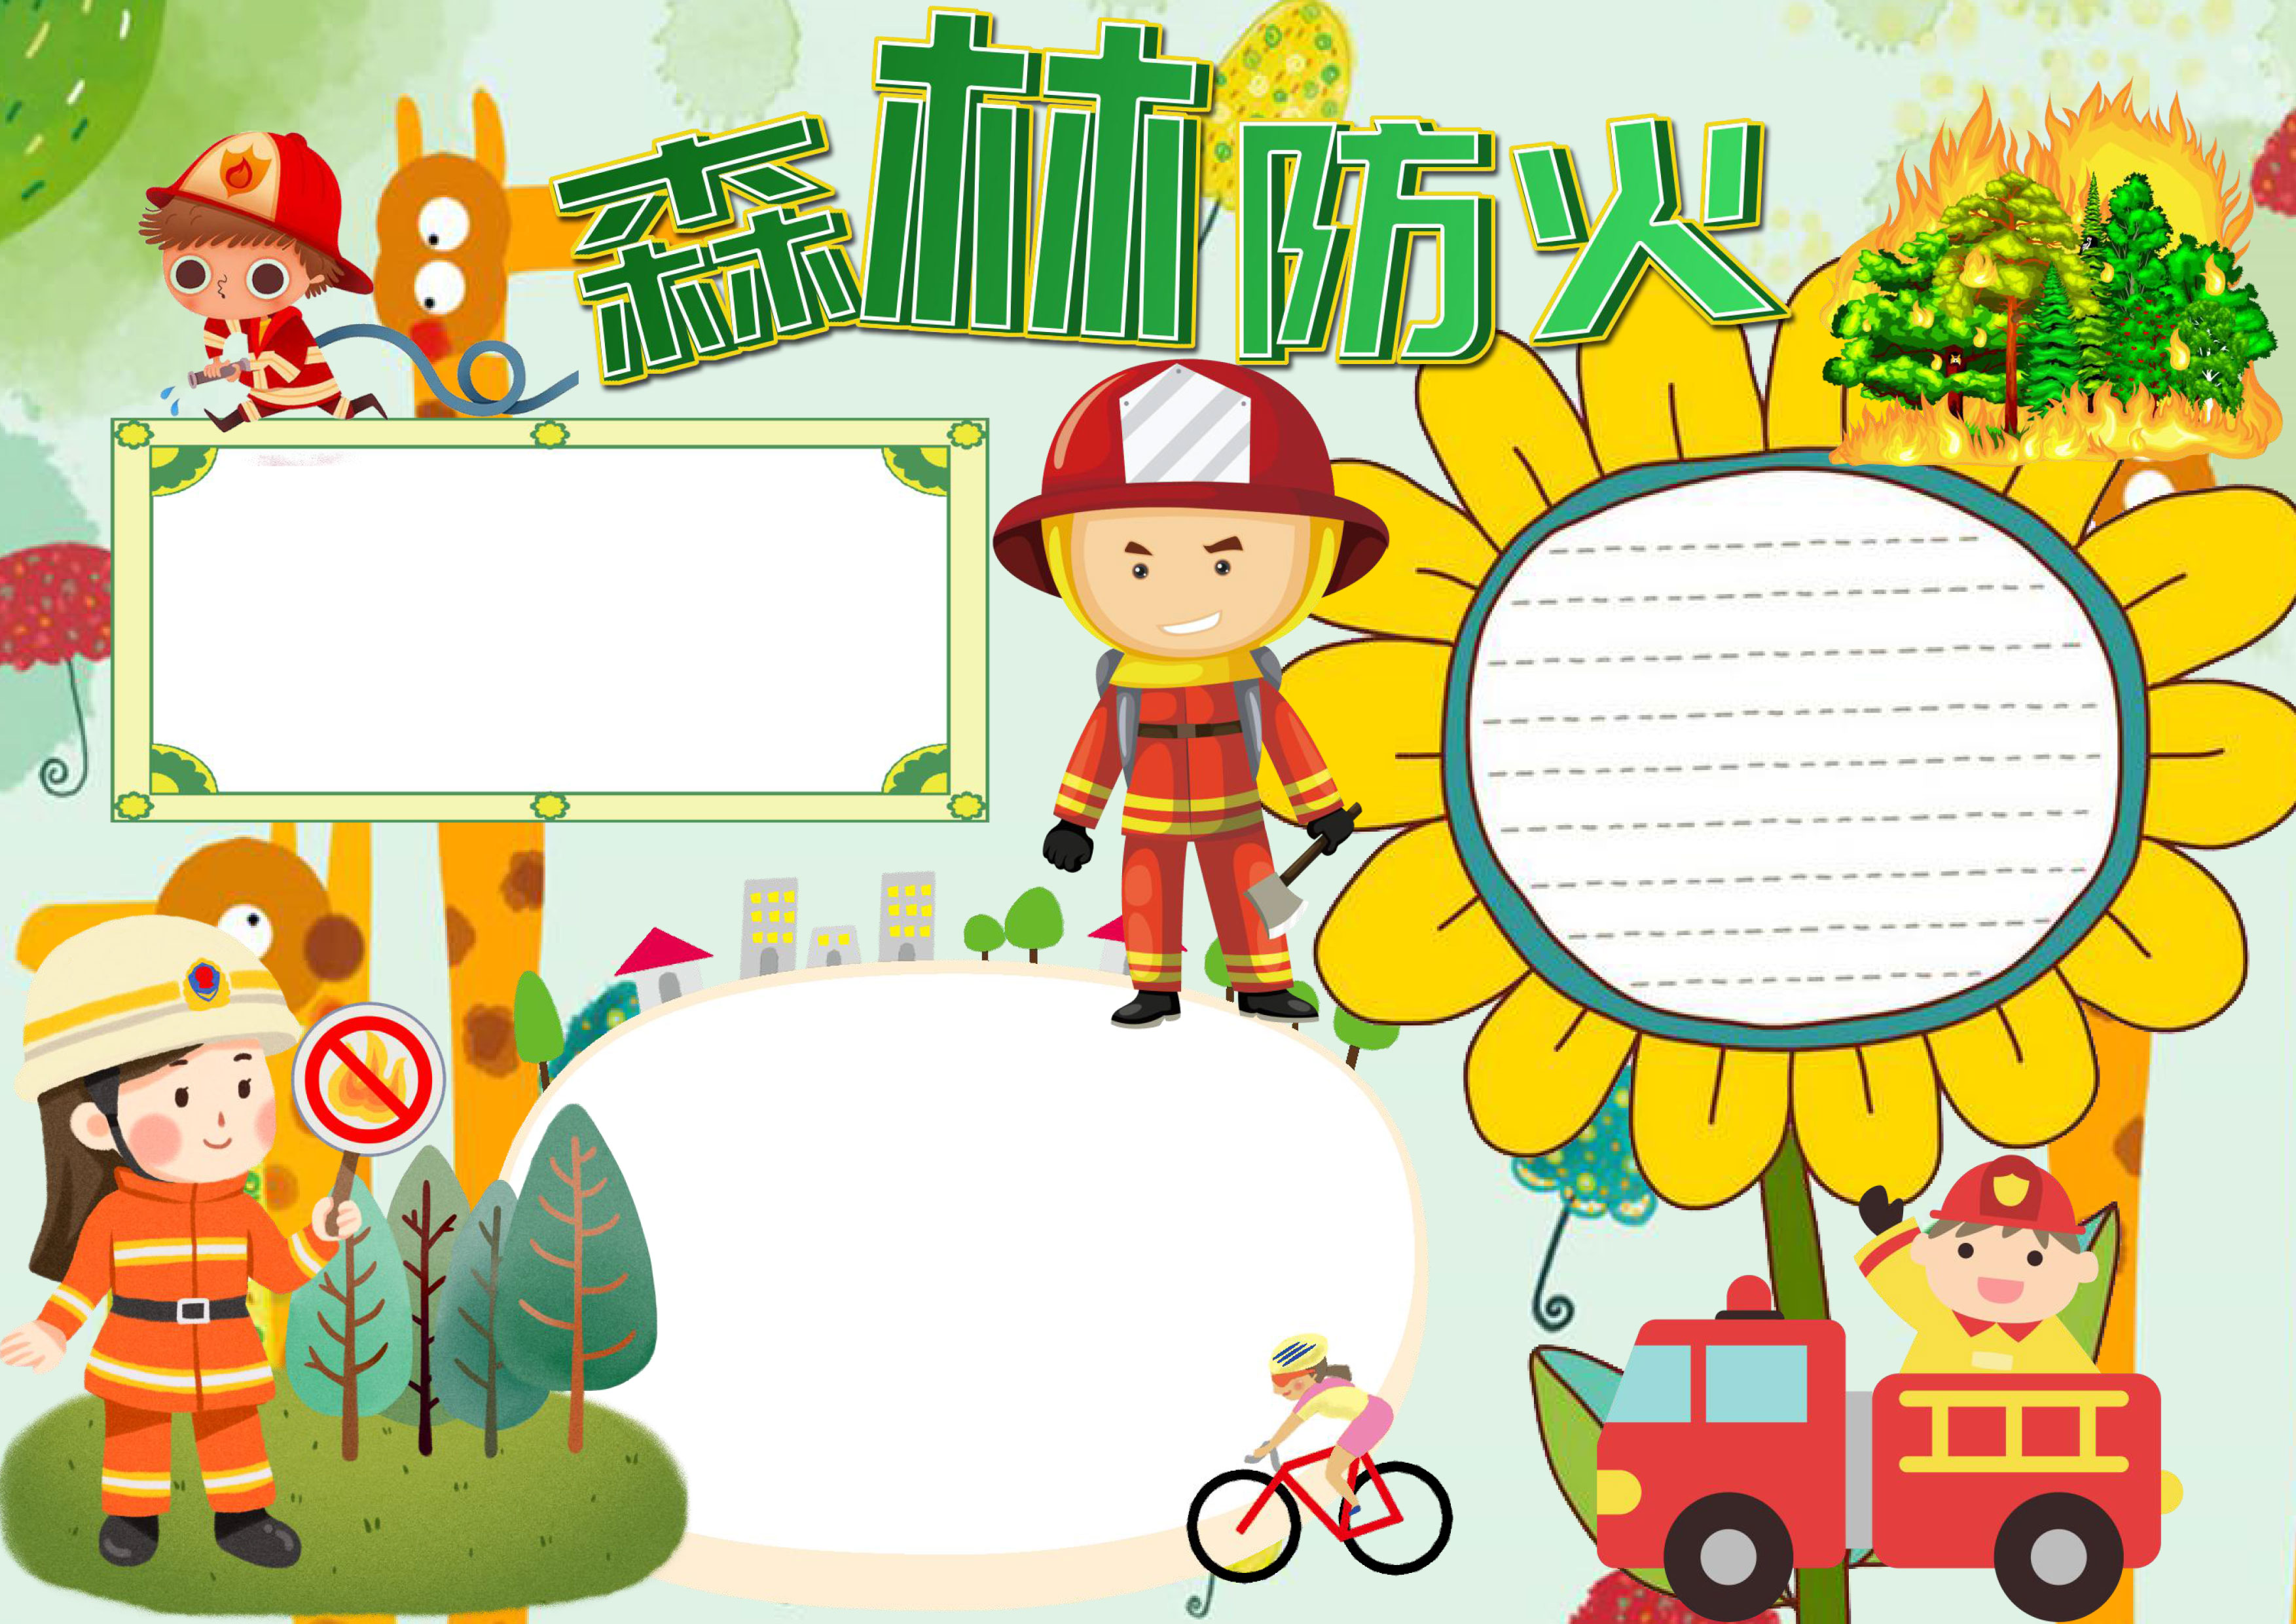 消防安全手抄报：消防安全手抄报版面设计图大全 --小学频道--中国教育在线